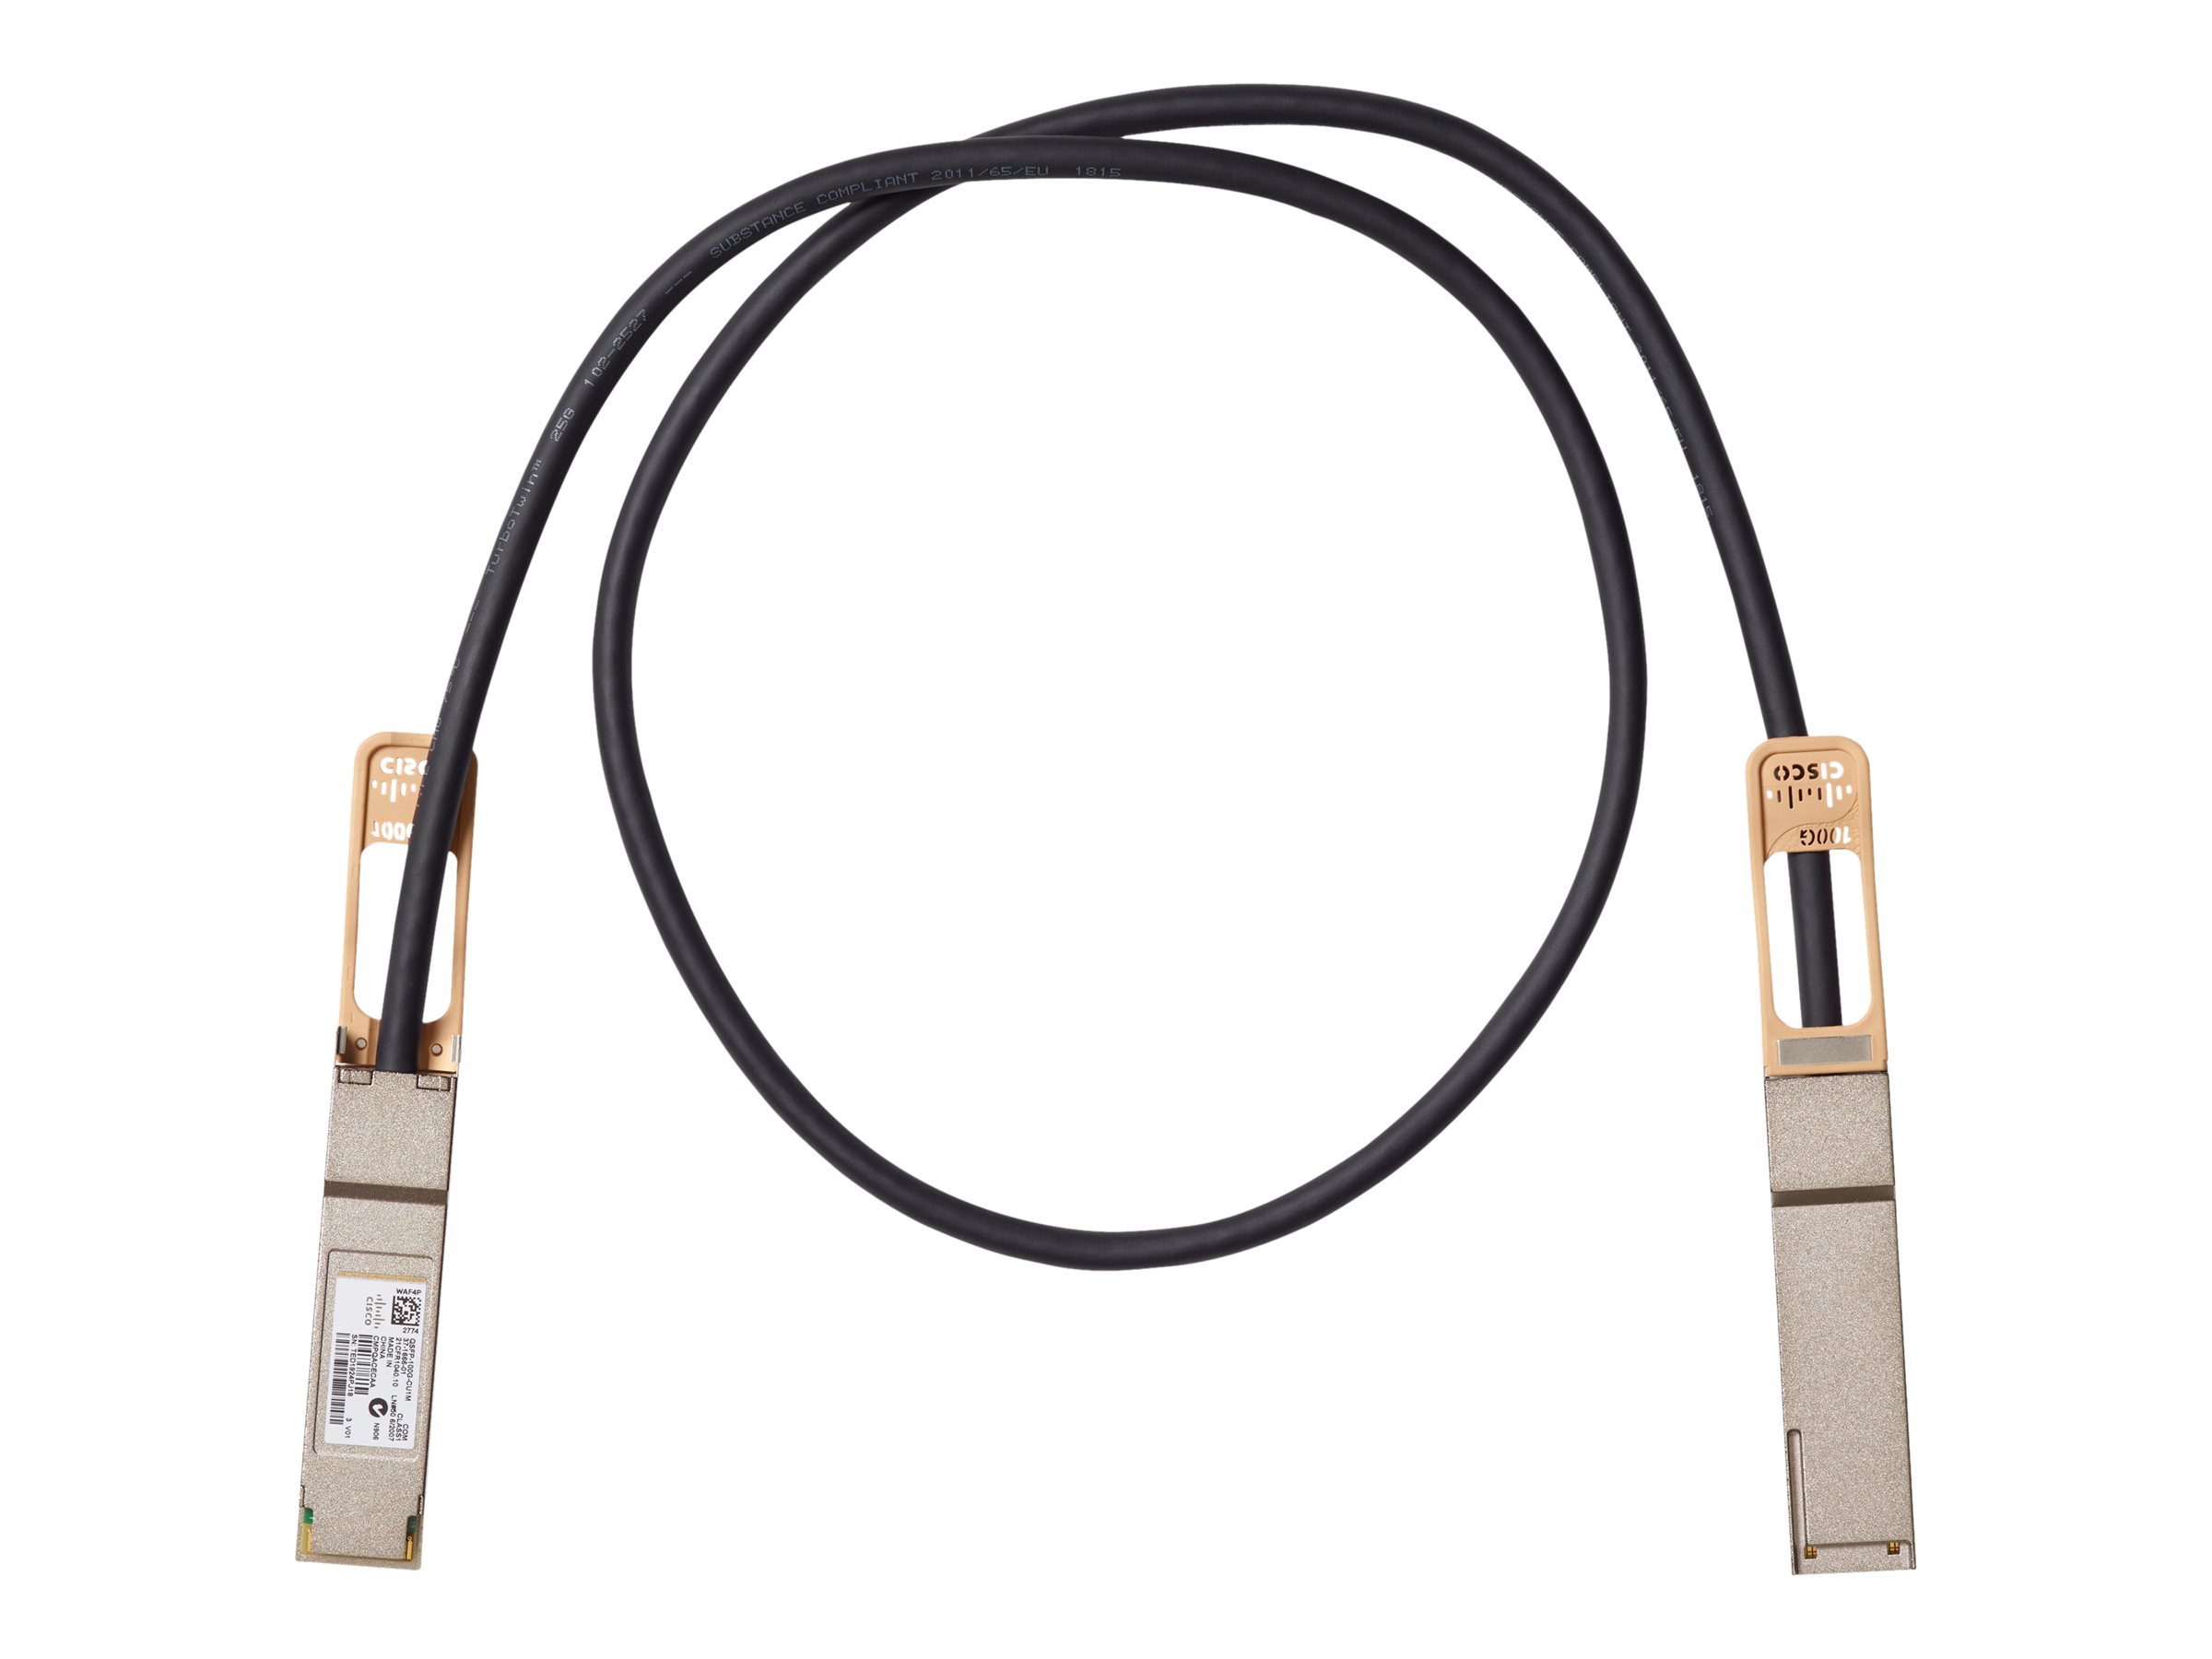 Cisco Copper Cable - Câble d'attache directe 100GBase - QSFP (M) pour QSFP (M) - 3 m - passif - pour Mellanox ConnectX-5 Ex EN; Nexus 93108TC-EX, 93180YC-FX, 9336C-FX2 - QSFP-100G-CU3M= - Câbles réseau spéciaux